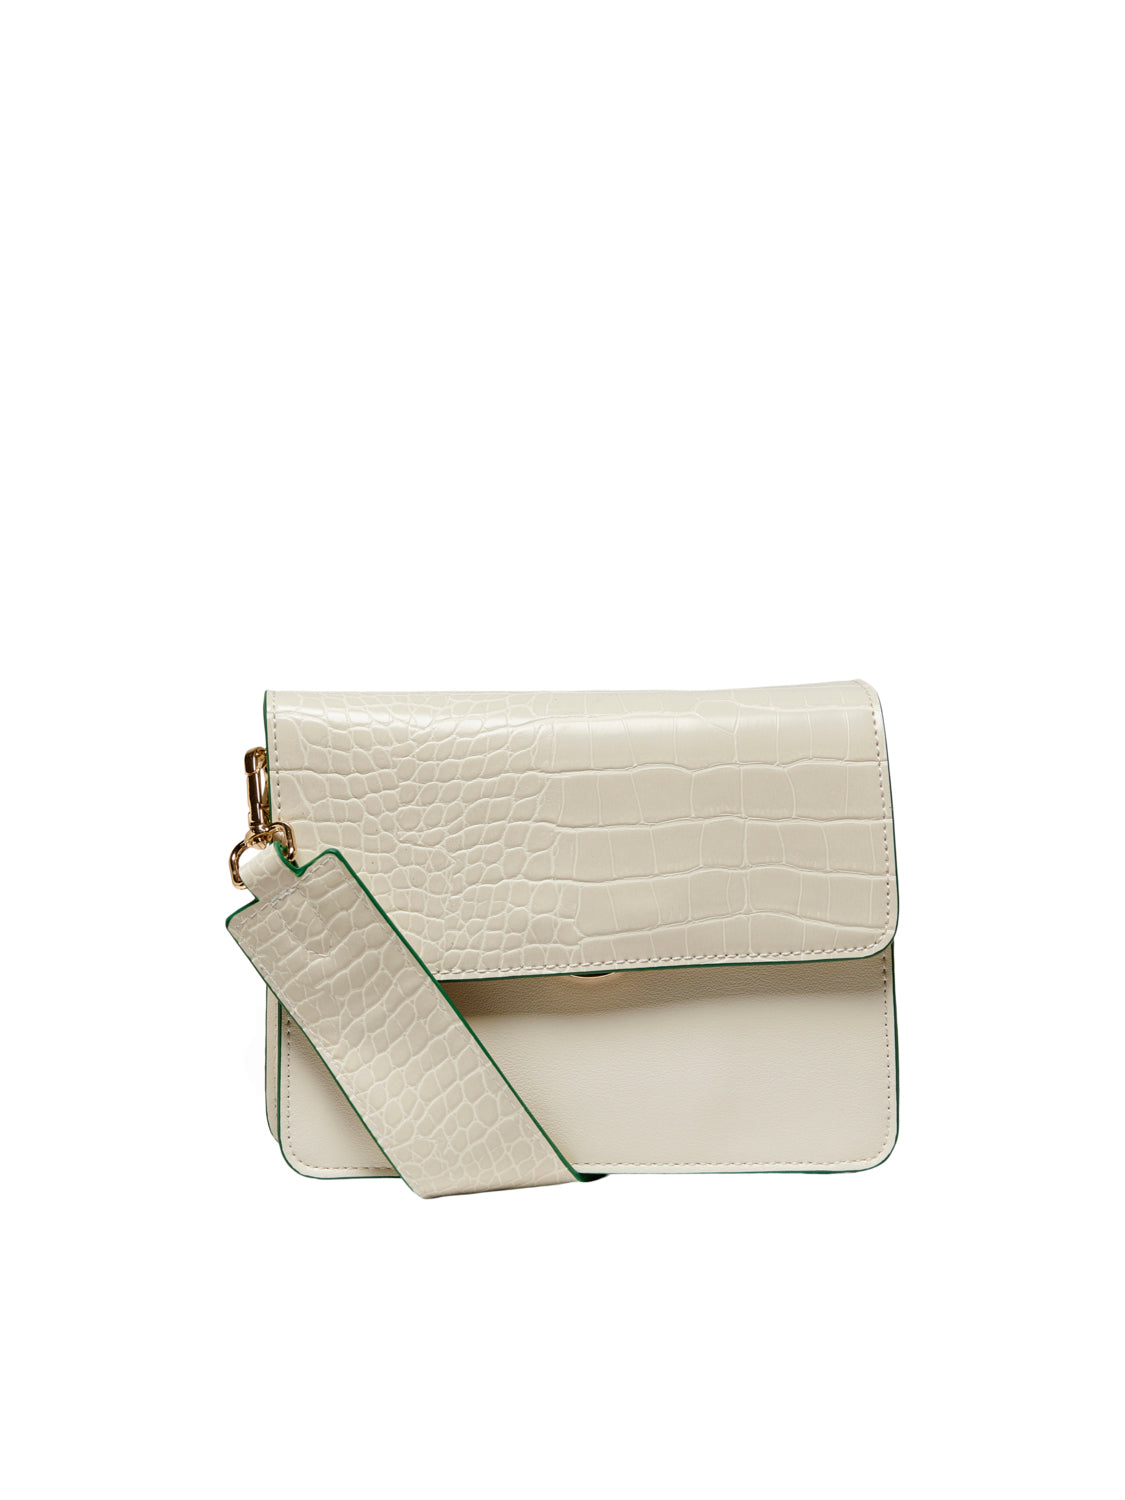 ONLSARAH Handbag - Whisper White